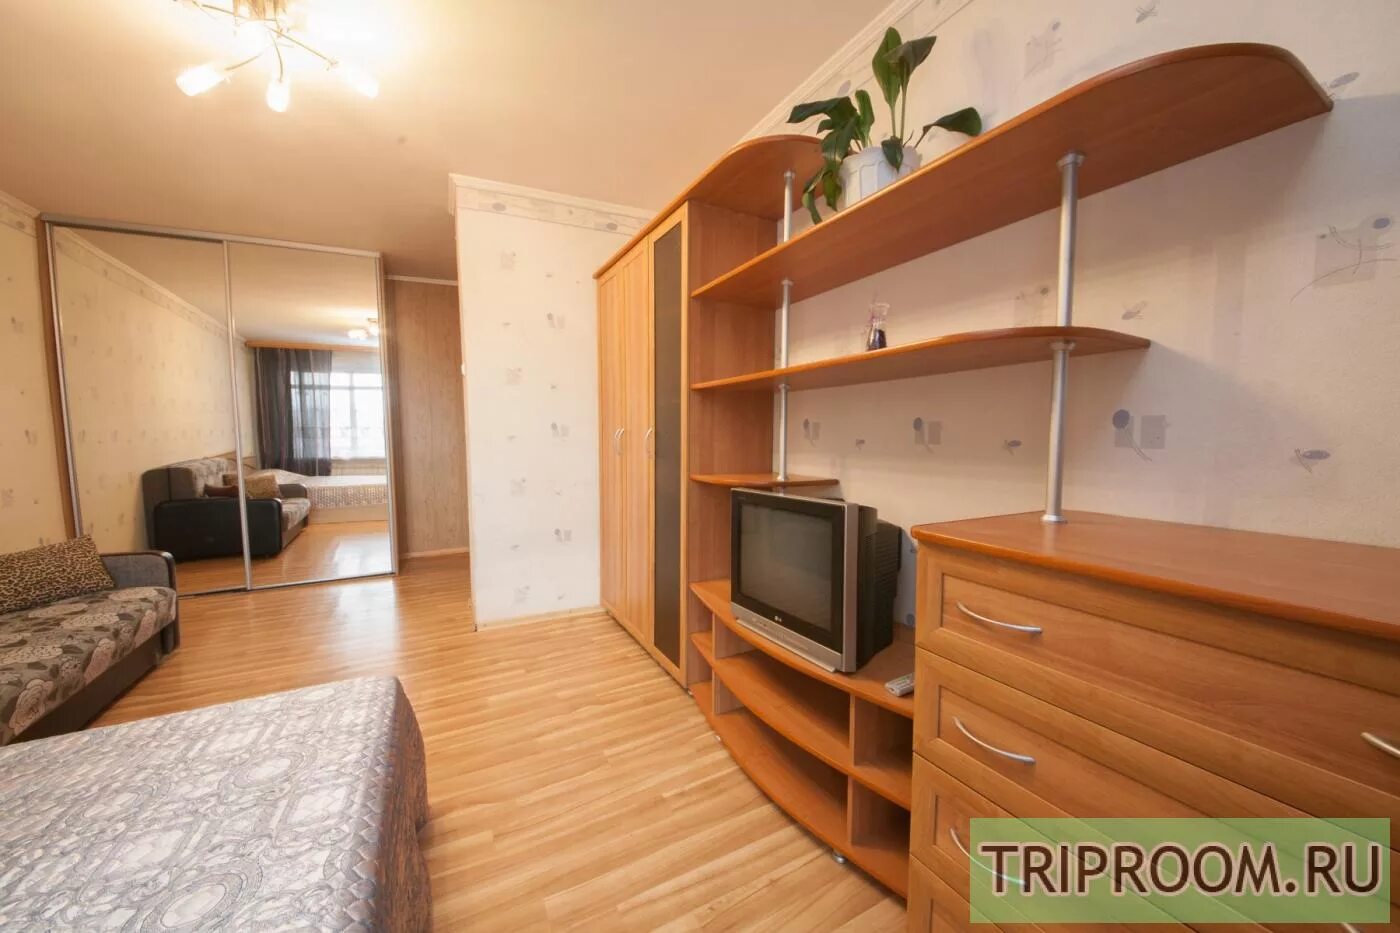 Новосибирск однокомнатные квартиры снять от хозяина. Обставить однокомнатную кв. Как обустроить 1 комнатную квартиру. Как обставить однокомнатную квартиру. Съемная квартира.